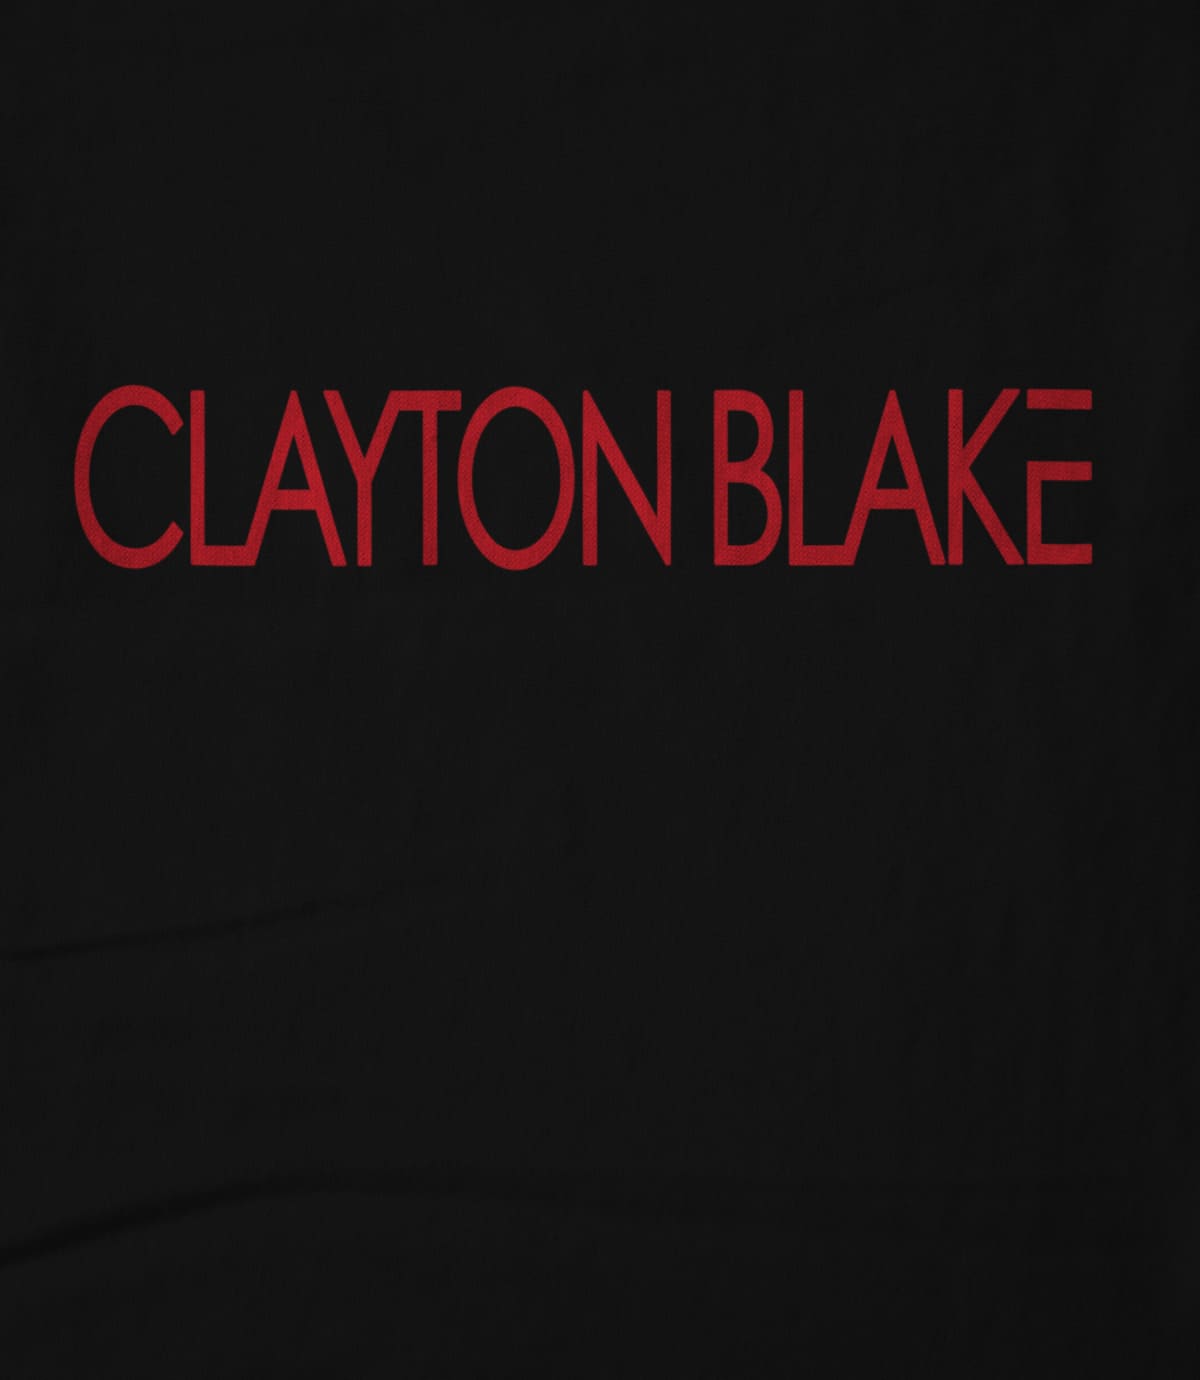 Clayton Blake